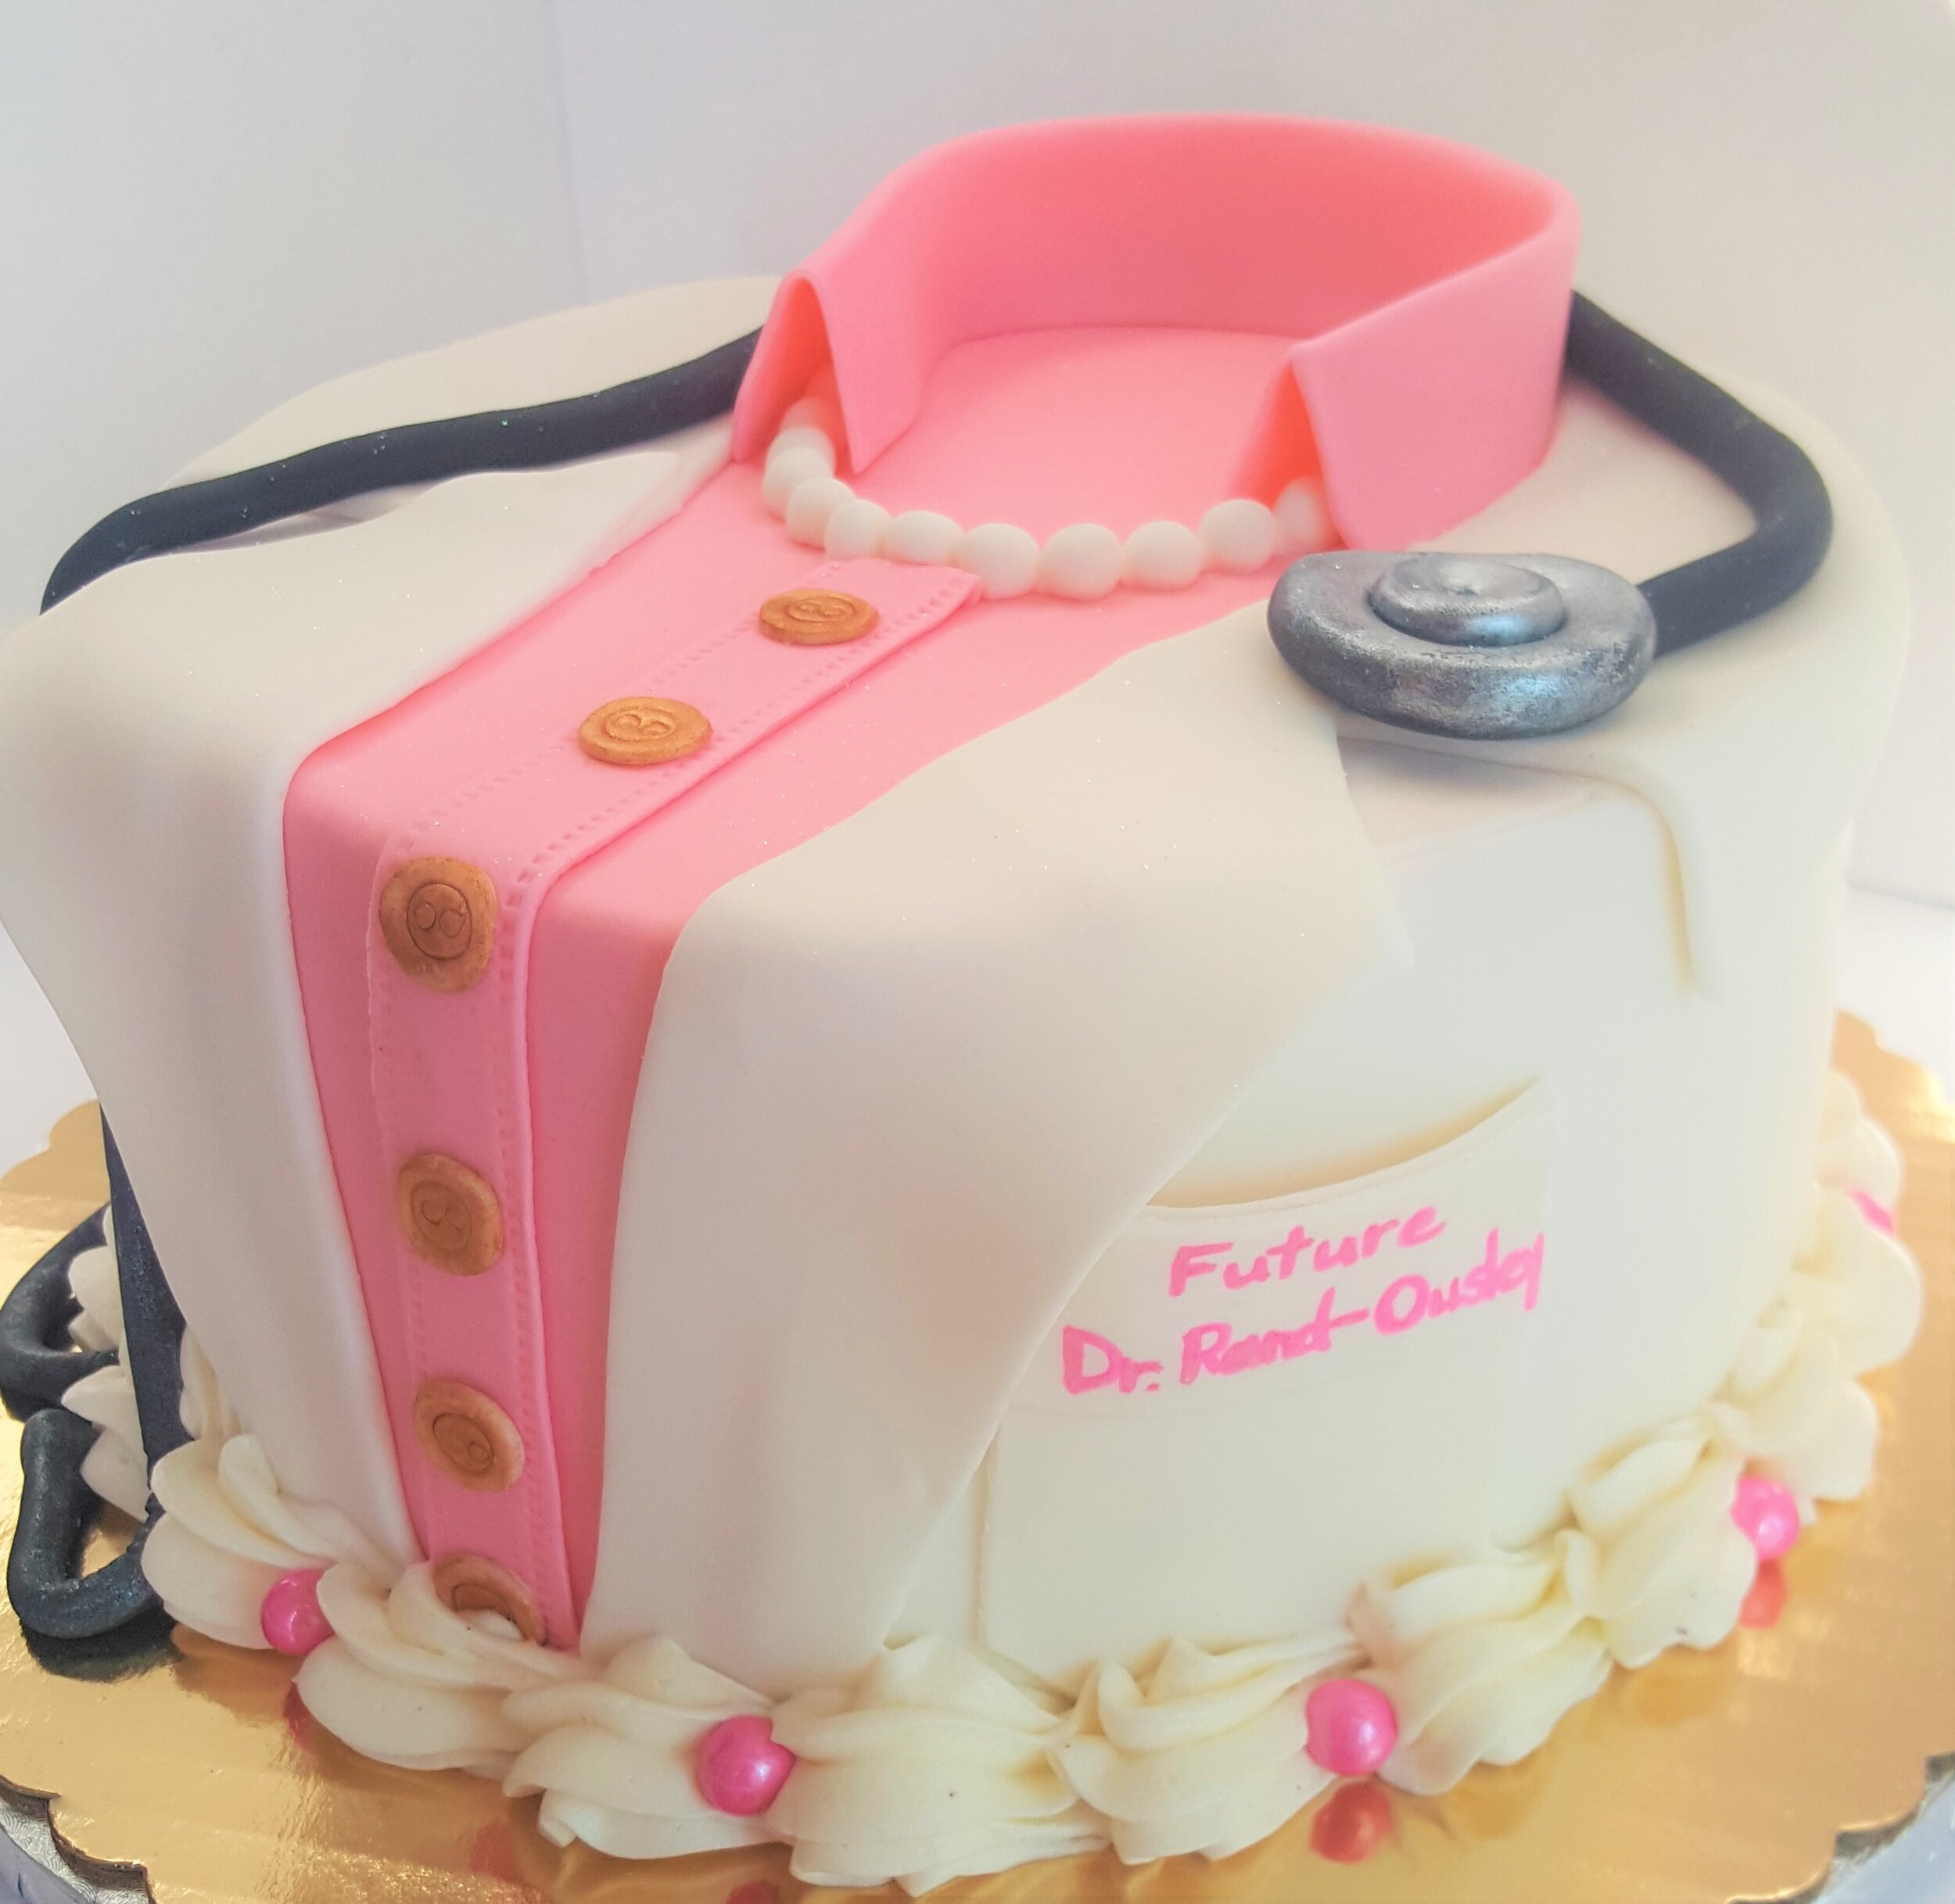 Chicago_Bakery-Medical_Cake.jpg